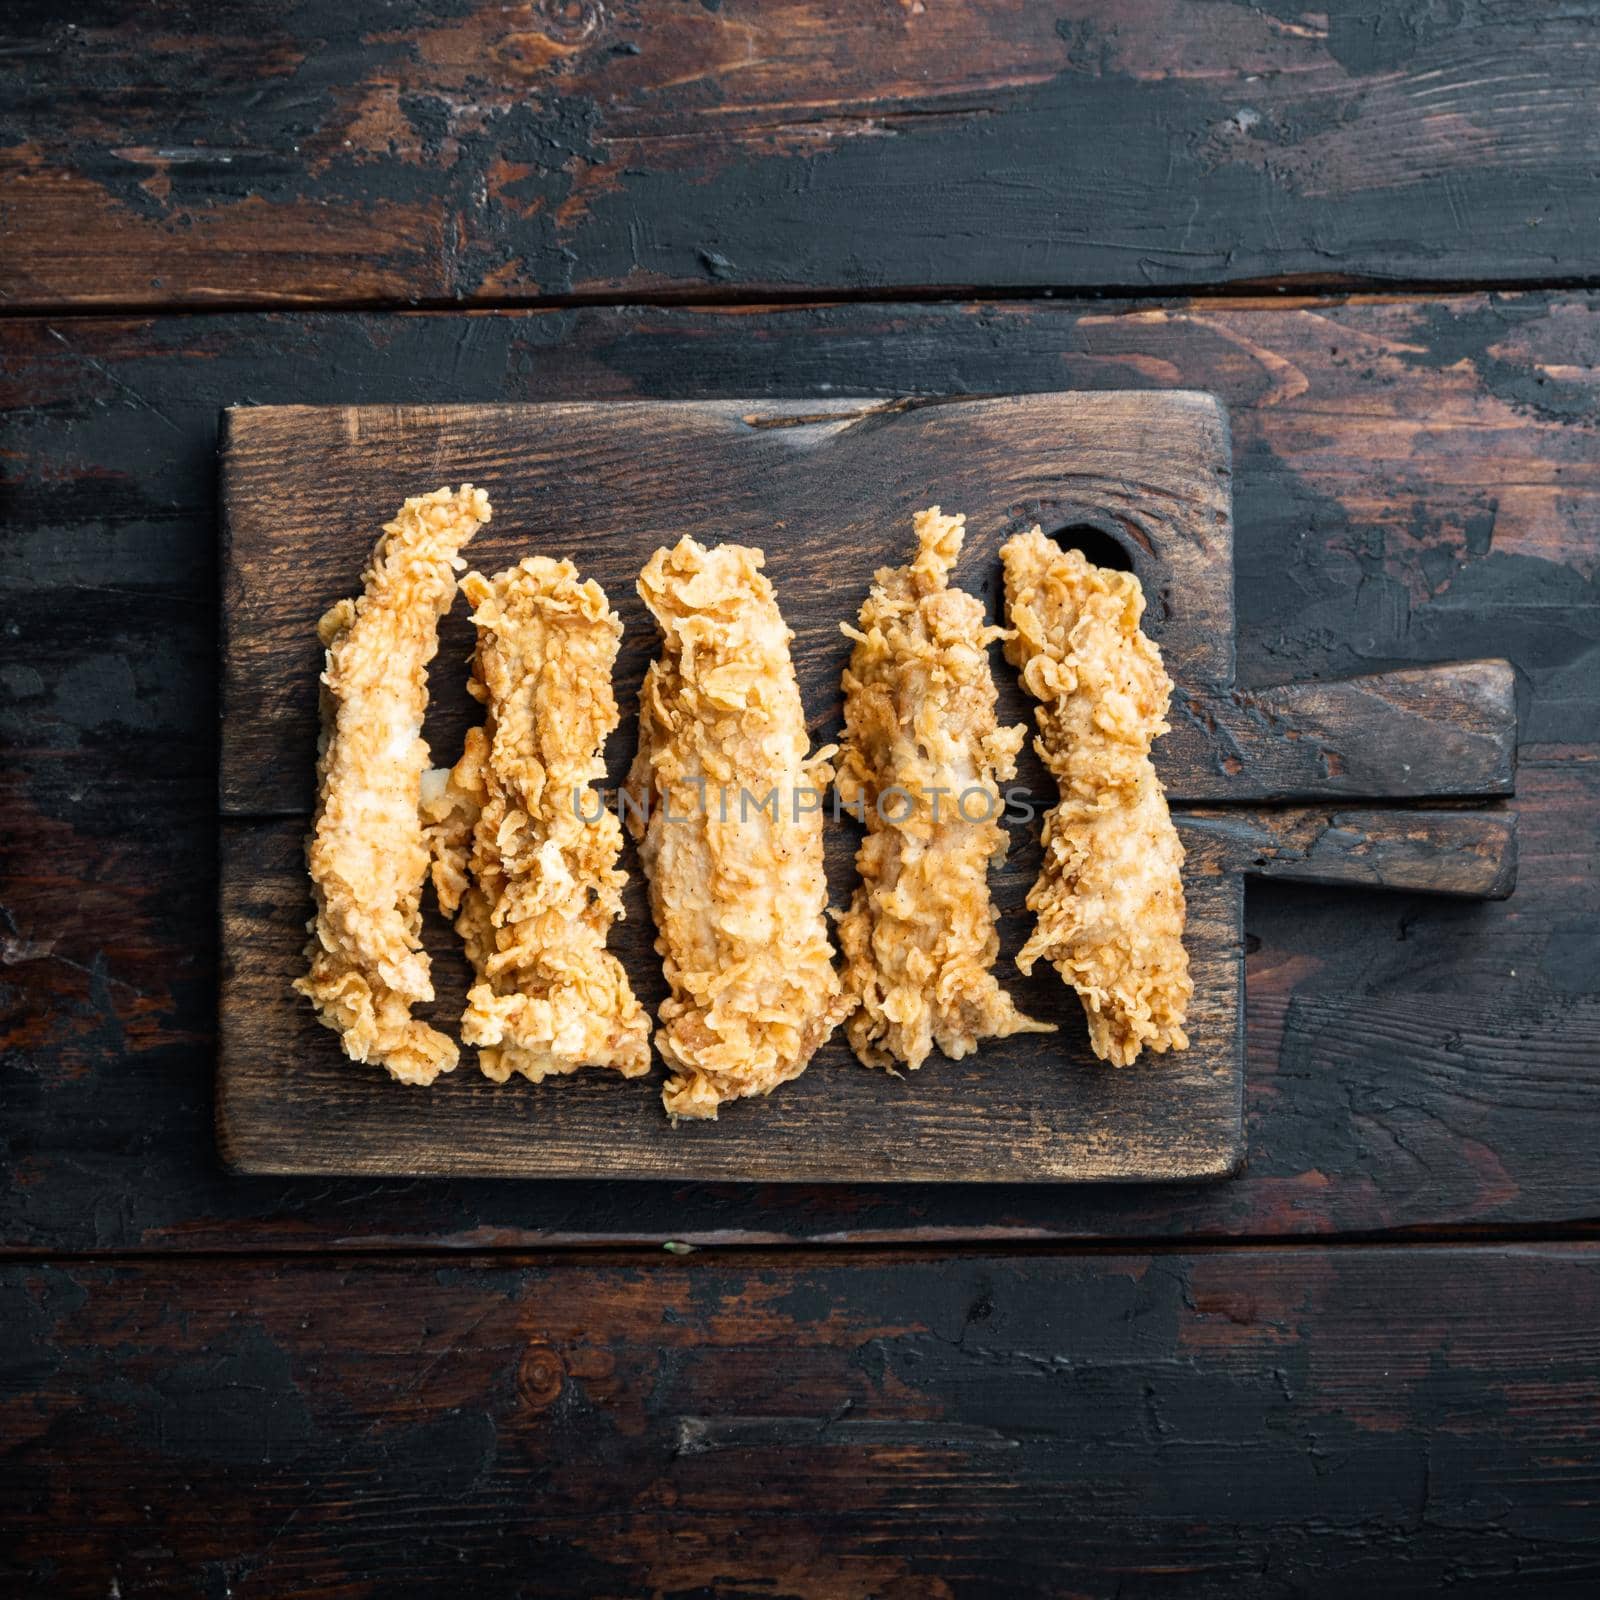 Crispy chicken sticks meat on dark wooden background, top view.